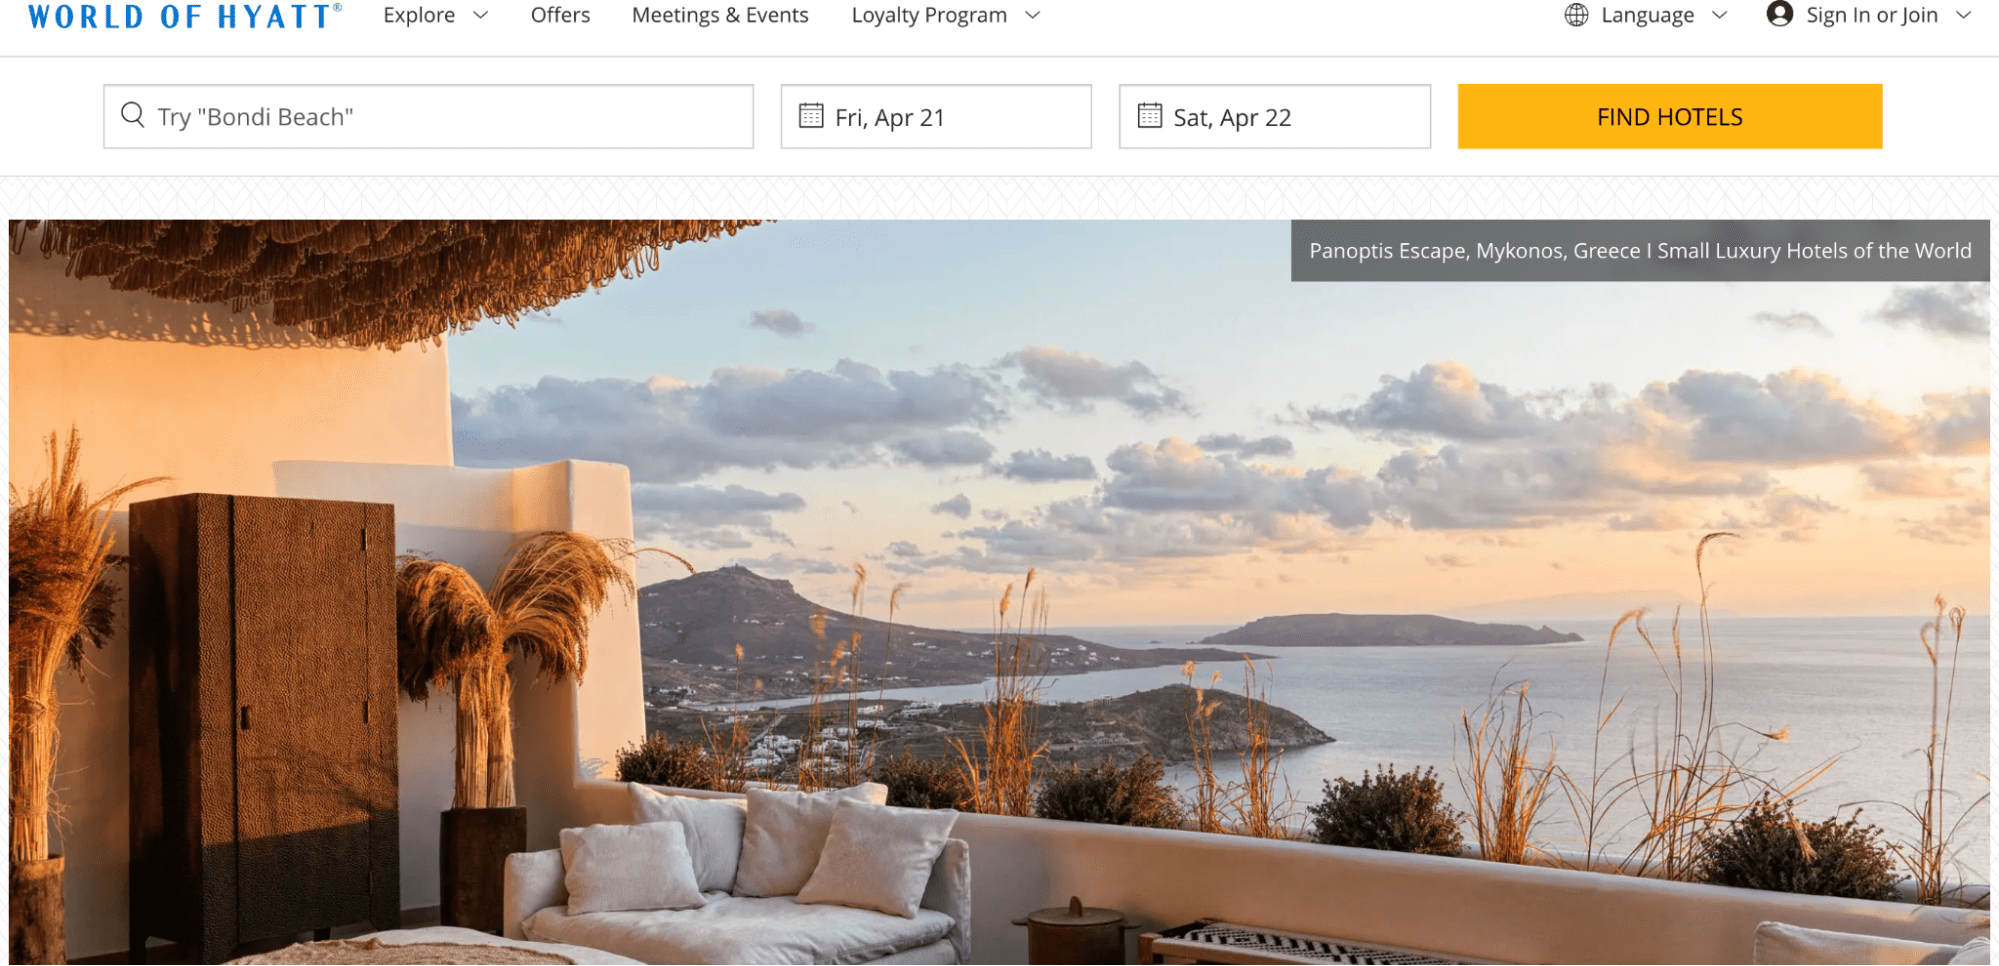 Top 6 Hotel Websites for Design Inspiration Image 3